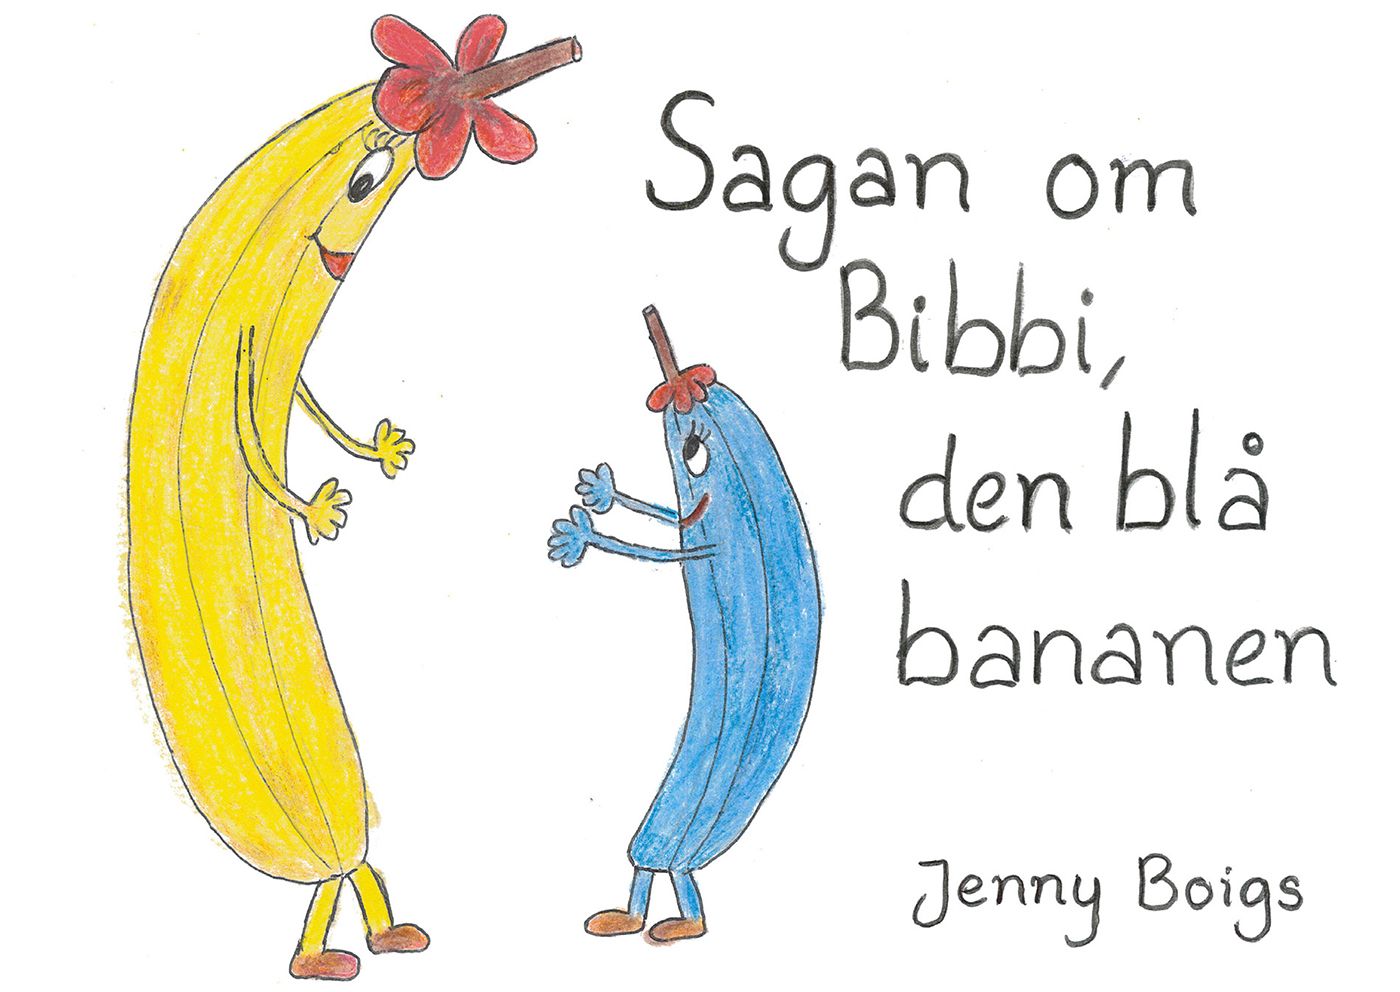 Sagan om Bibbi, den blå bananen, e-bog af Jenny Boigs